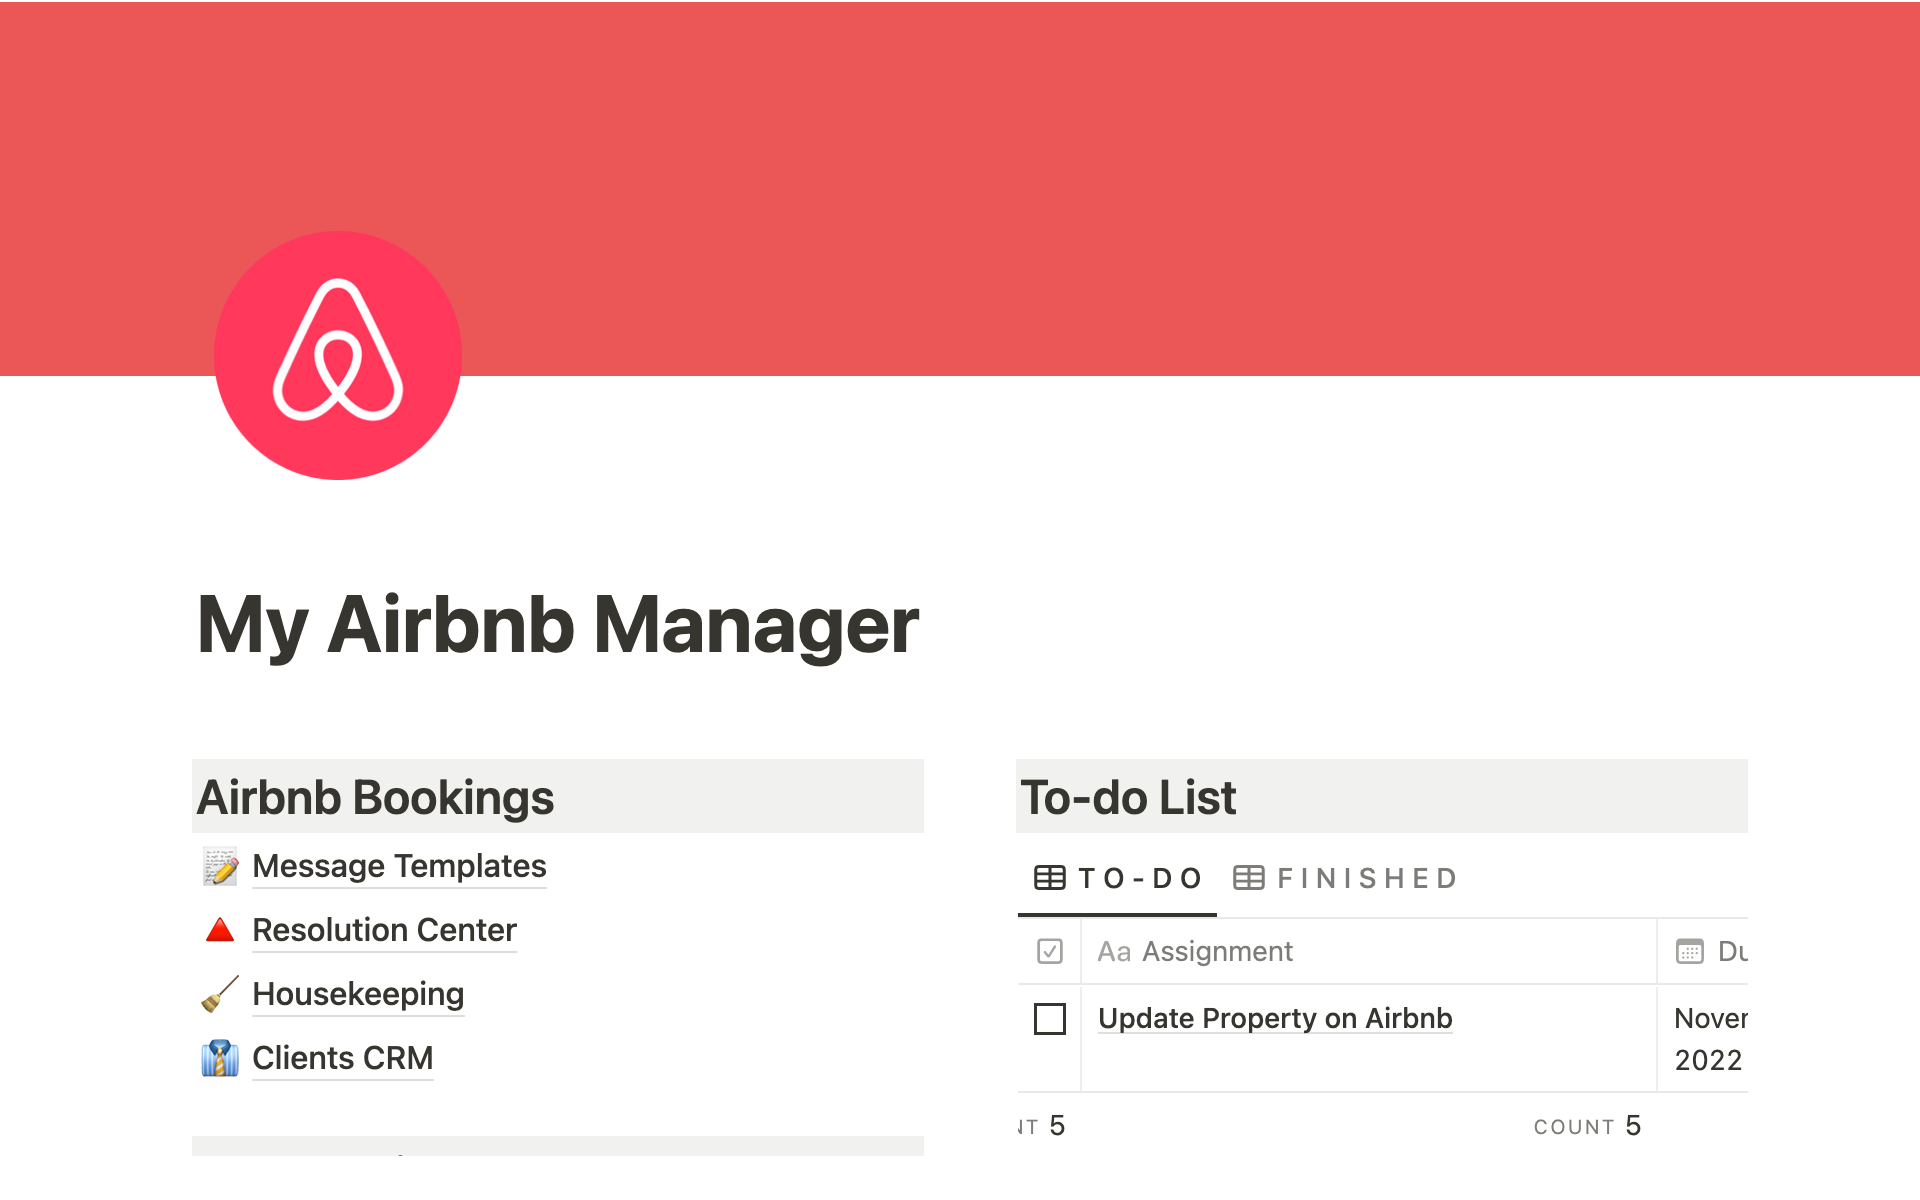 Vista previa de una plantilla para Basic Airbnb Management System